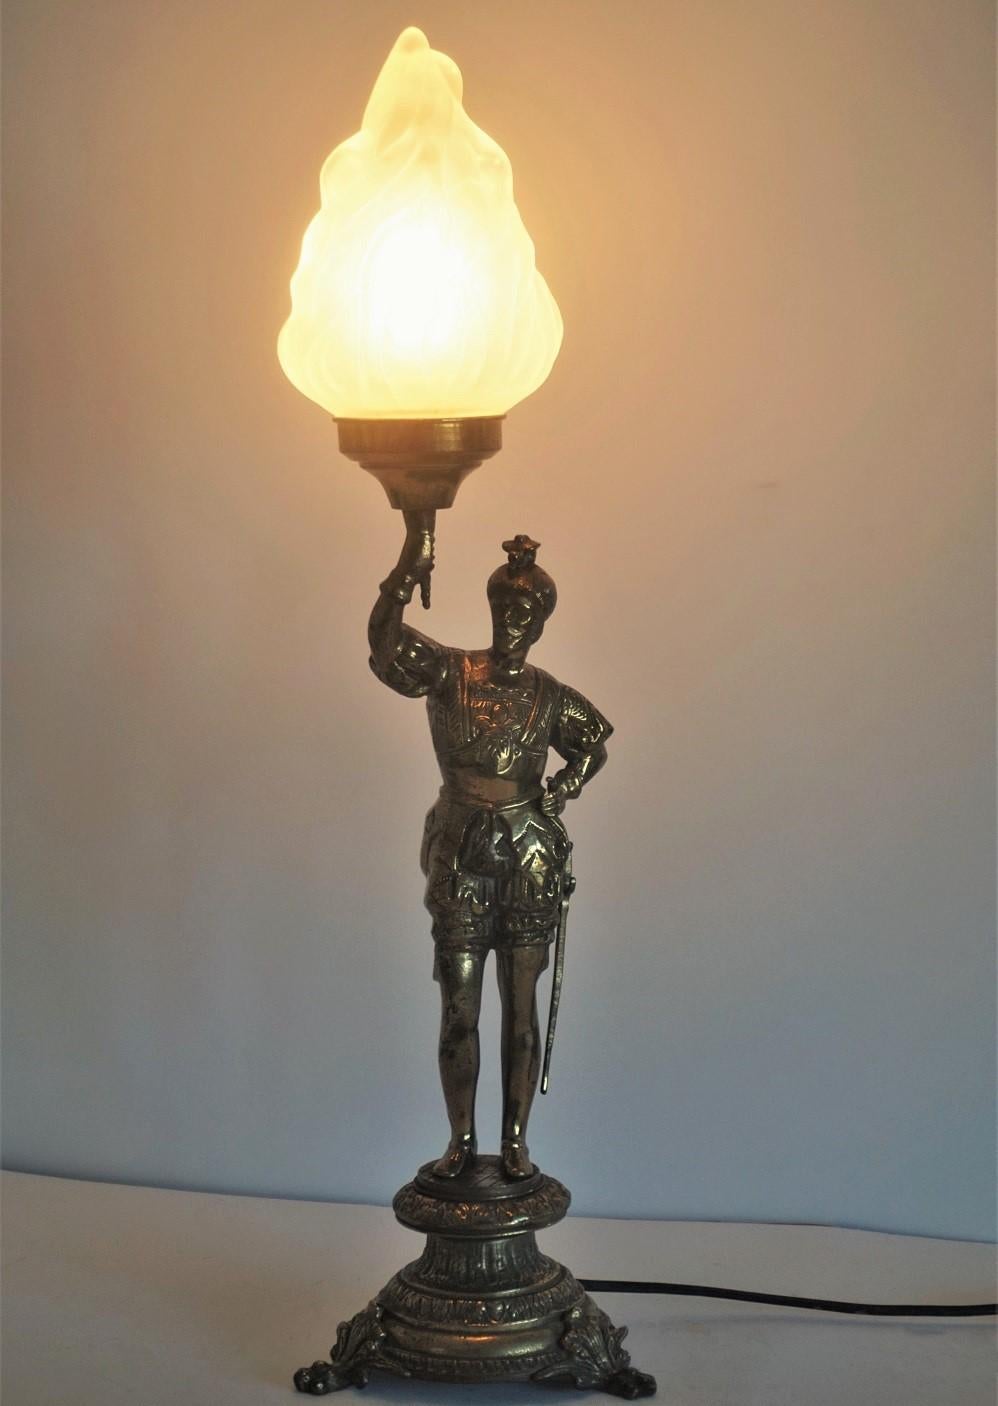 Candélabre en bronze massif, sculpture de chevalier en laiton, converti par la suite en lampe de table électrifiée, avec un grand abat-jour en verre dépoli en forme de torche.
Elle s'adapte à l'ampoule E27 d'Edison.
Hauteur totale : 23.75 in (60